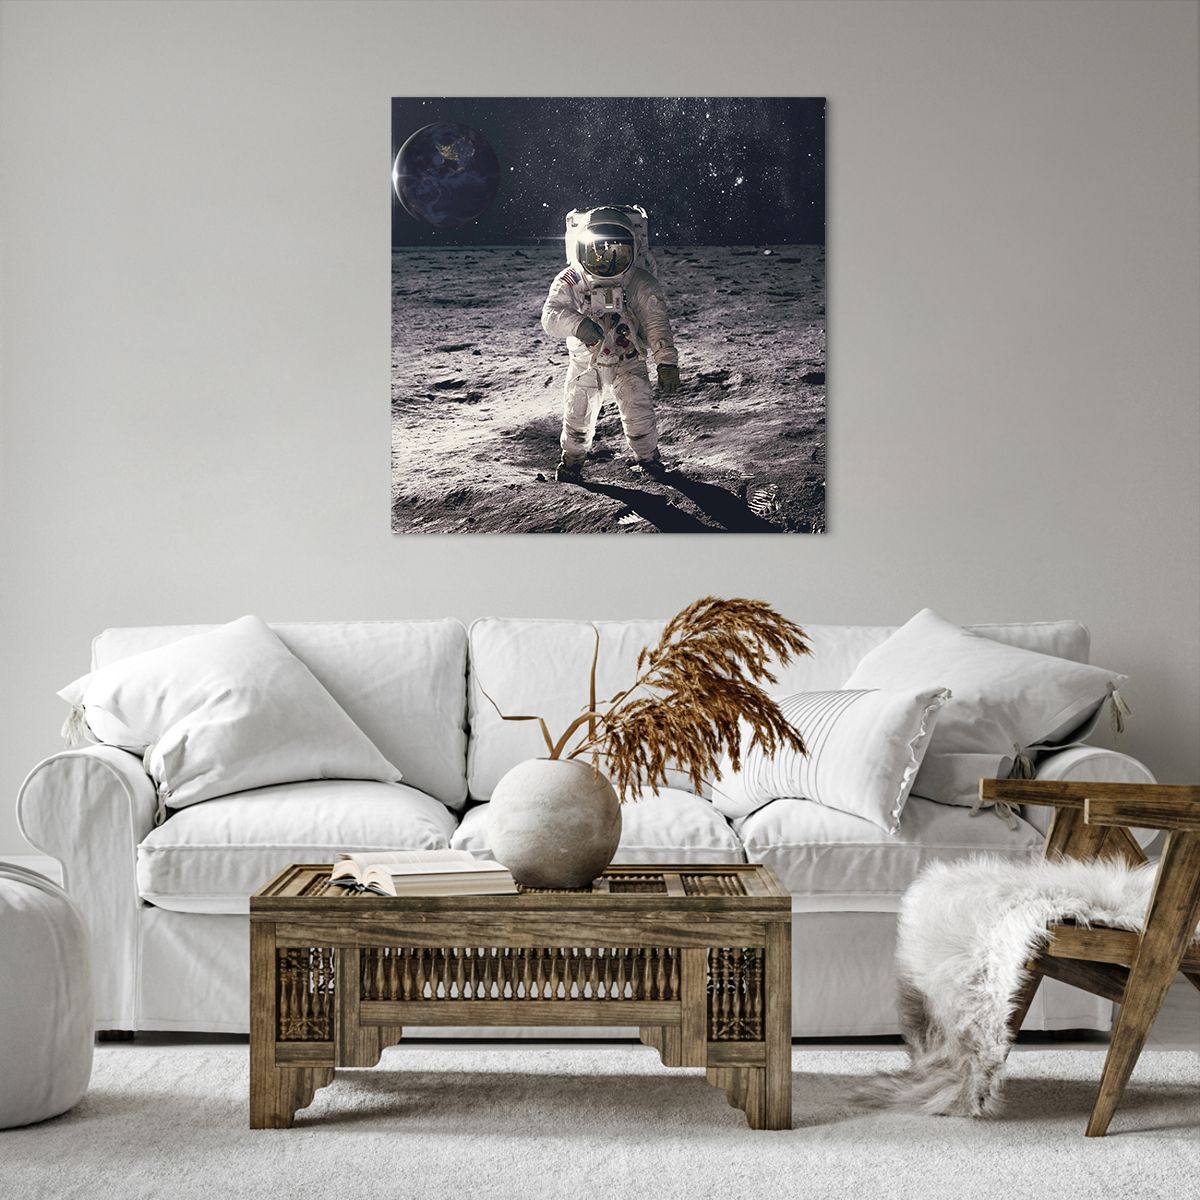 Schilderen op canvas  Abstractie, Schilderen op canvas  Man Op De Maan, Schilderen op canvas  Astronaut, Schilderen op canvas  Kosmos, Schilderen op canvas  Maan